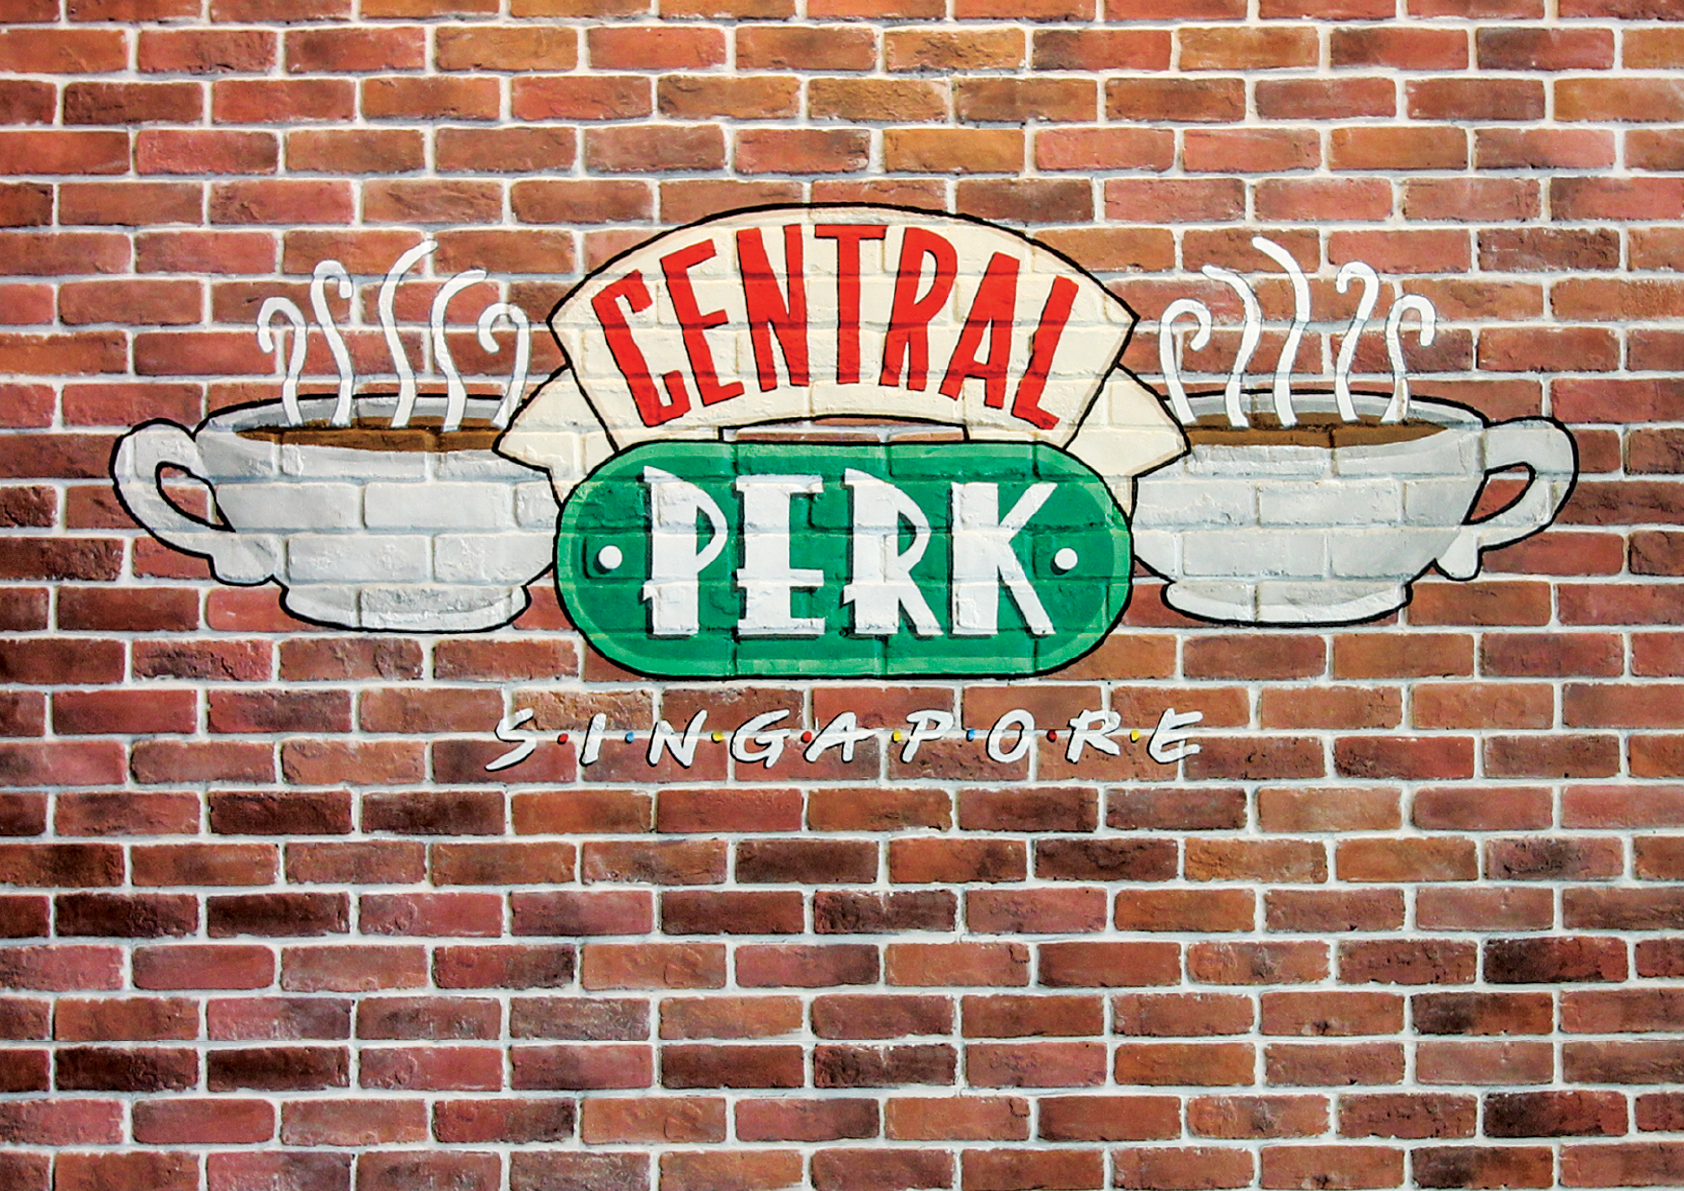 Central Perk